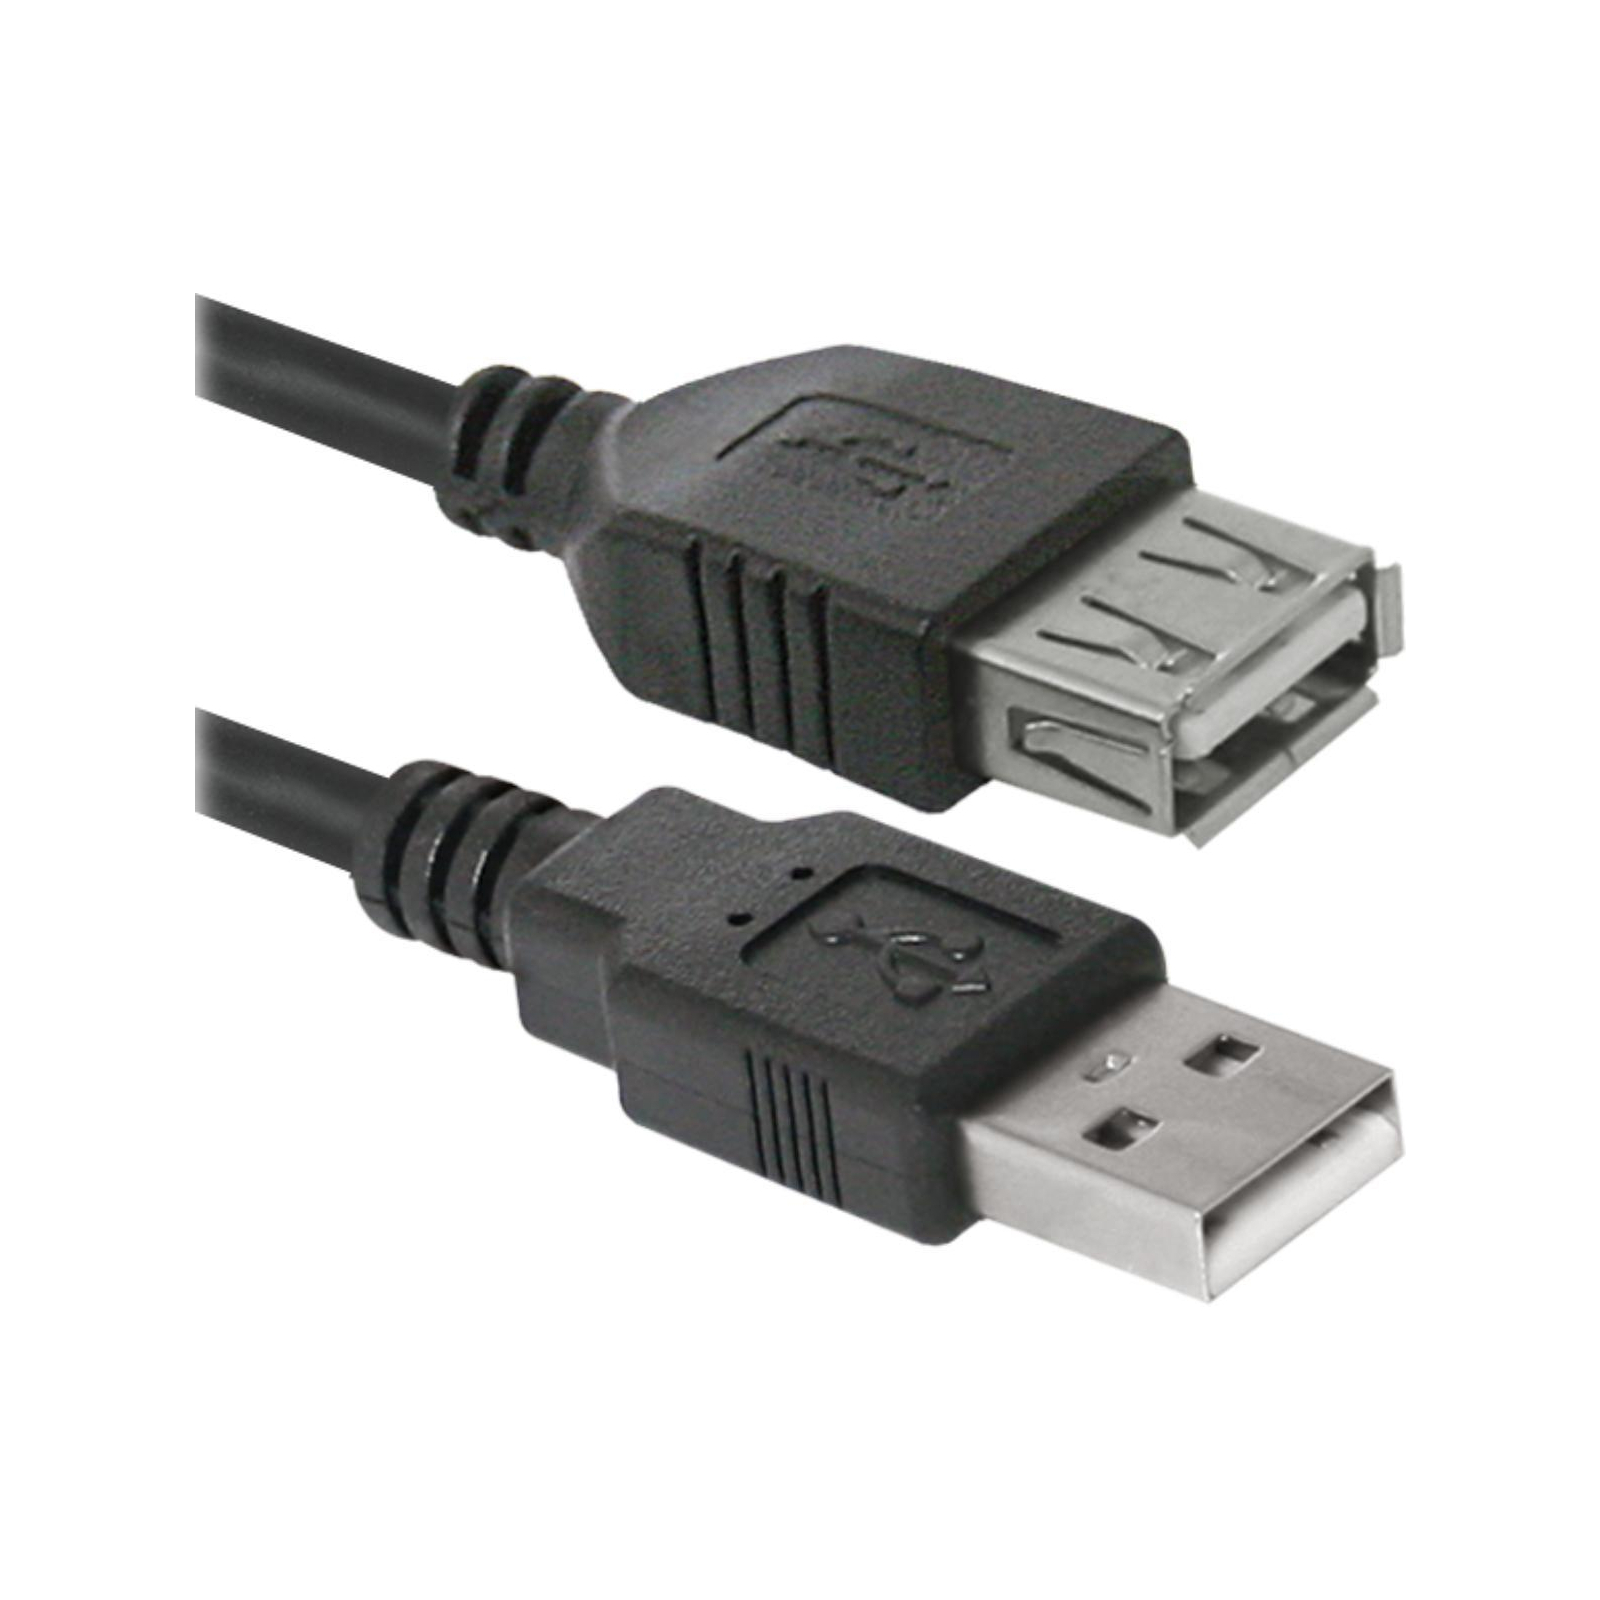 Дата кабель USB 2.0 AM/AF 5m USB02-17 Defender (87454) изображение 2